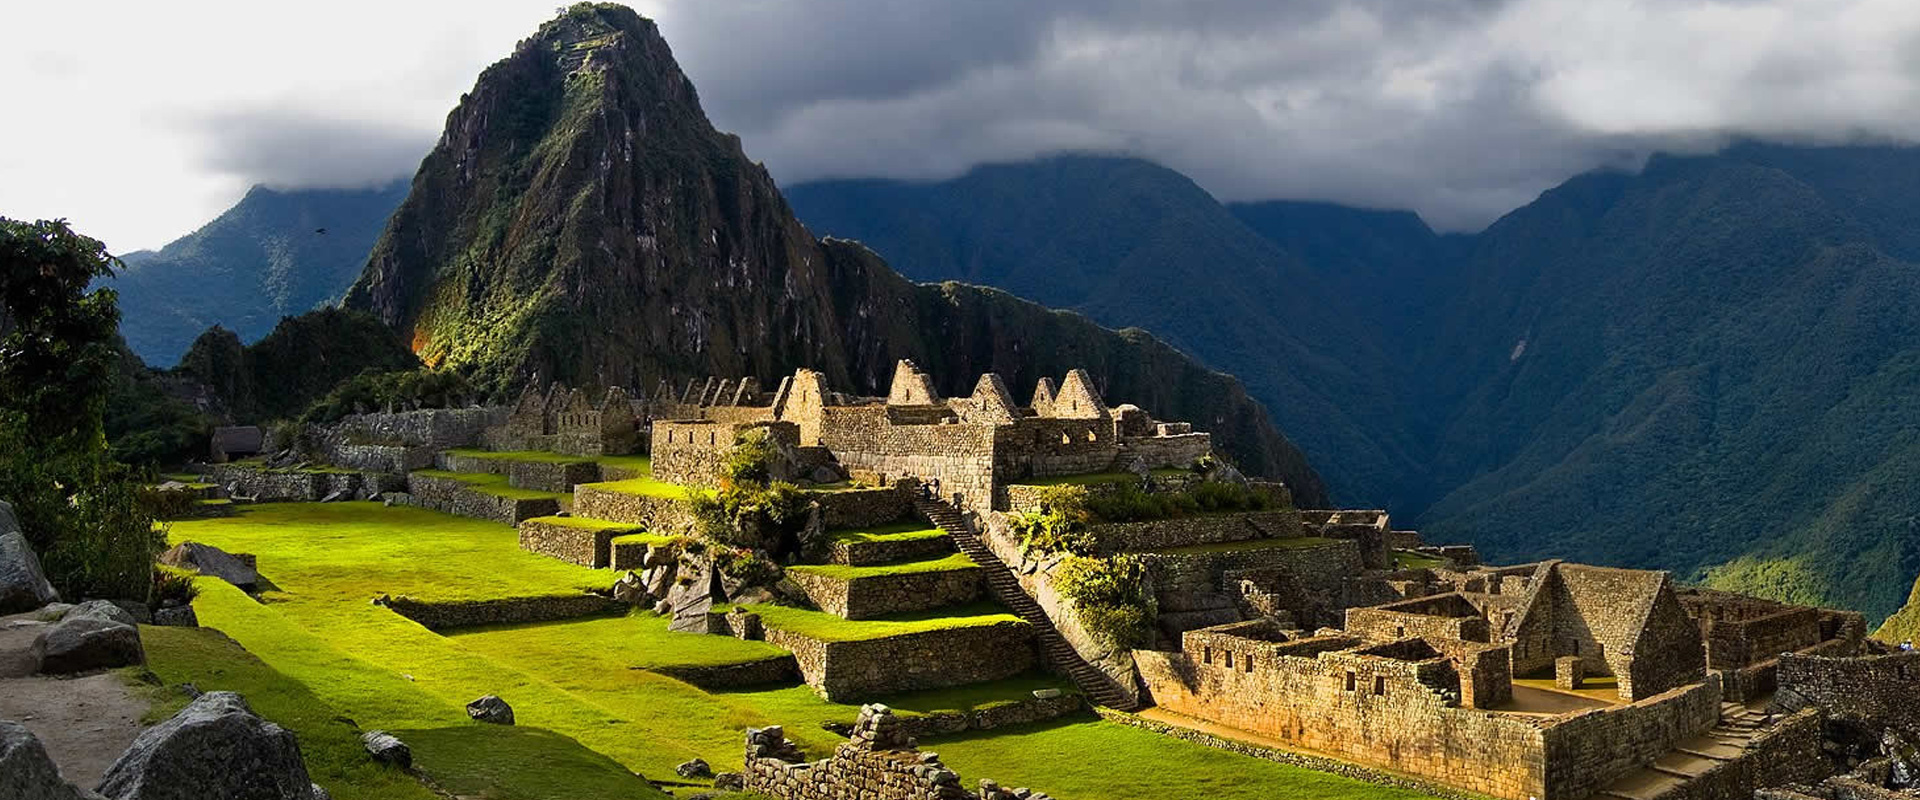 Machu Picchu Train 2 Days